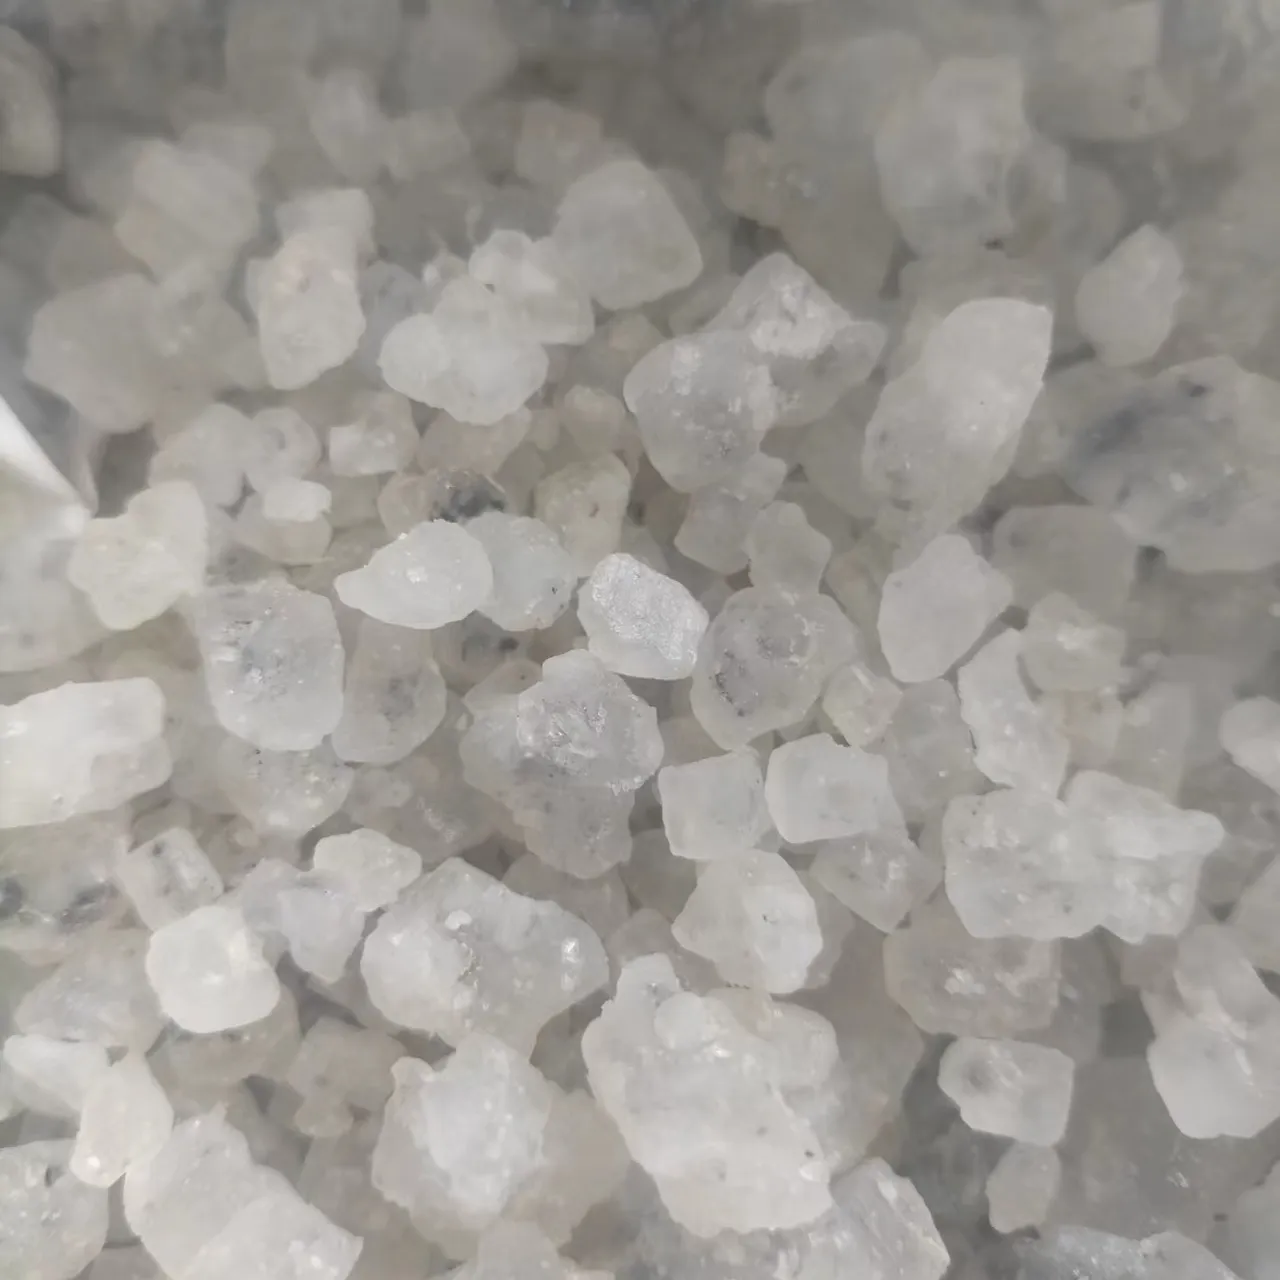 China hochwertige Nacl 96 Bulk Natrium chlorid für Industrie qualität Industrie Salz Natrium hydrochlorid